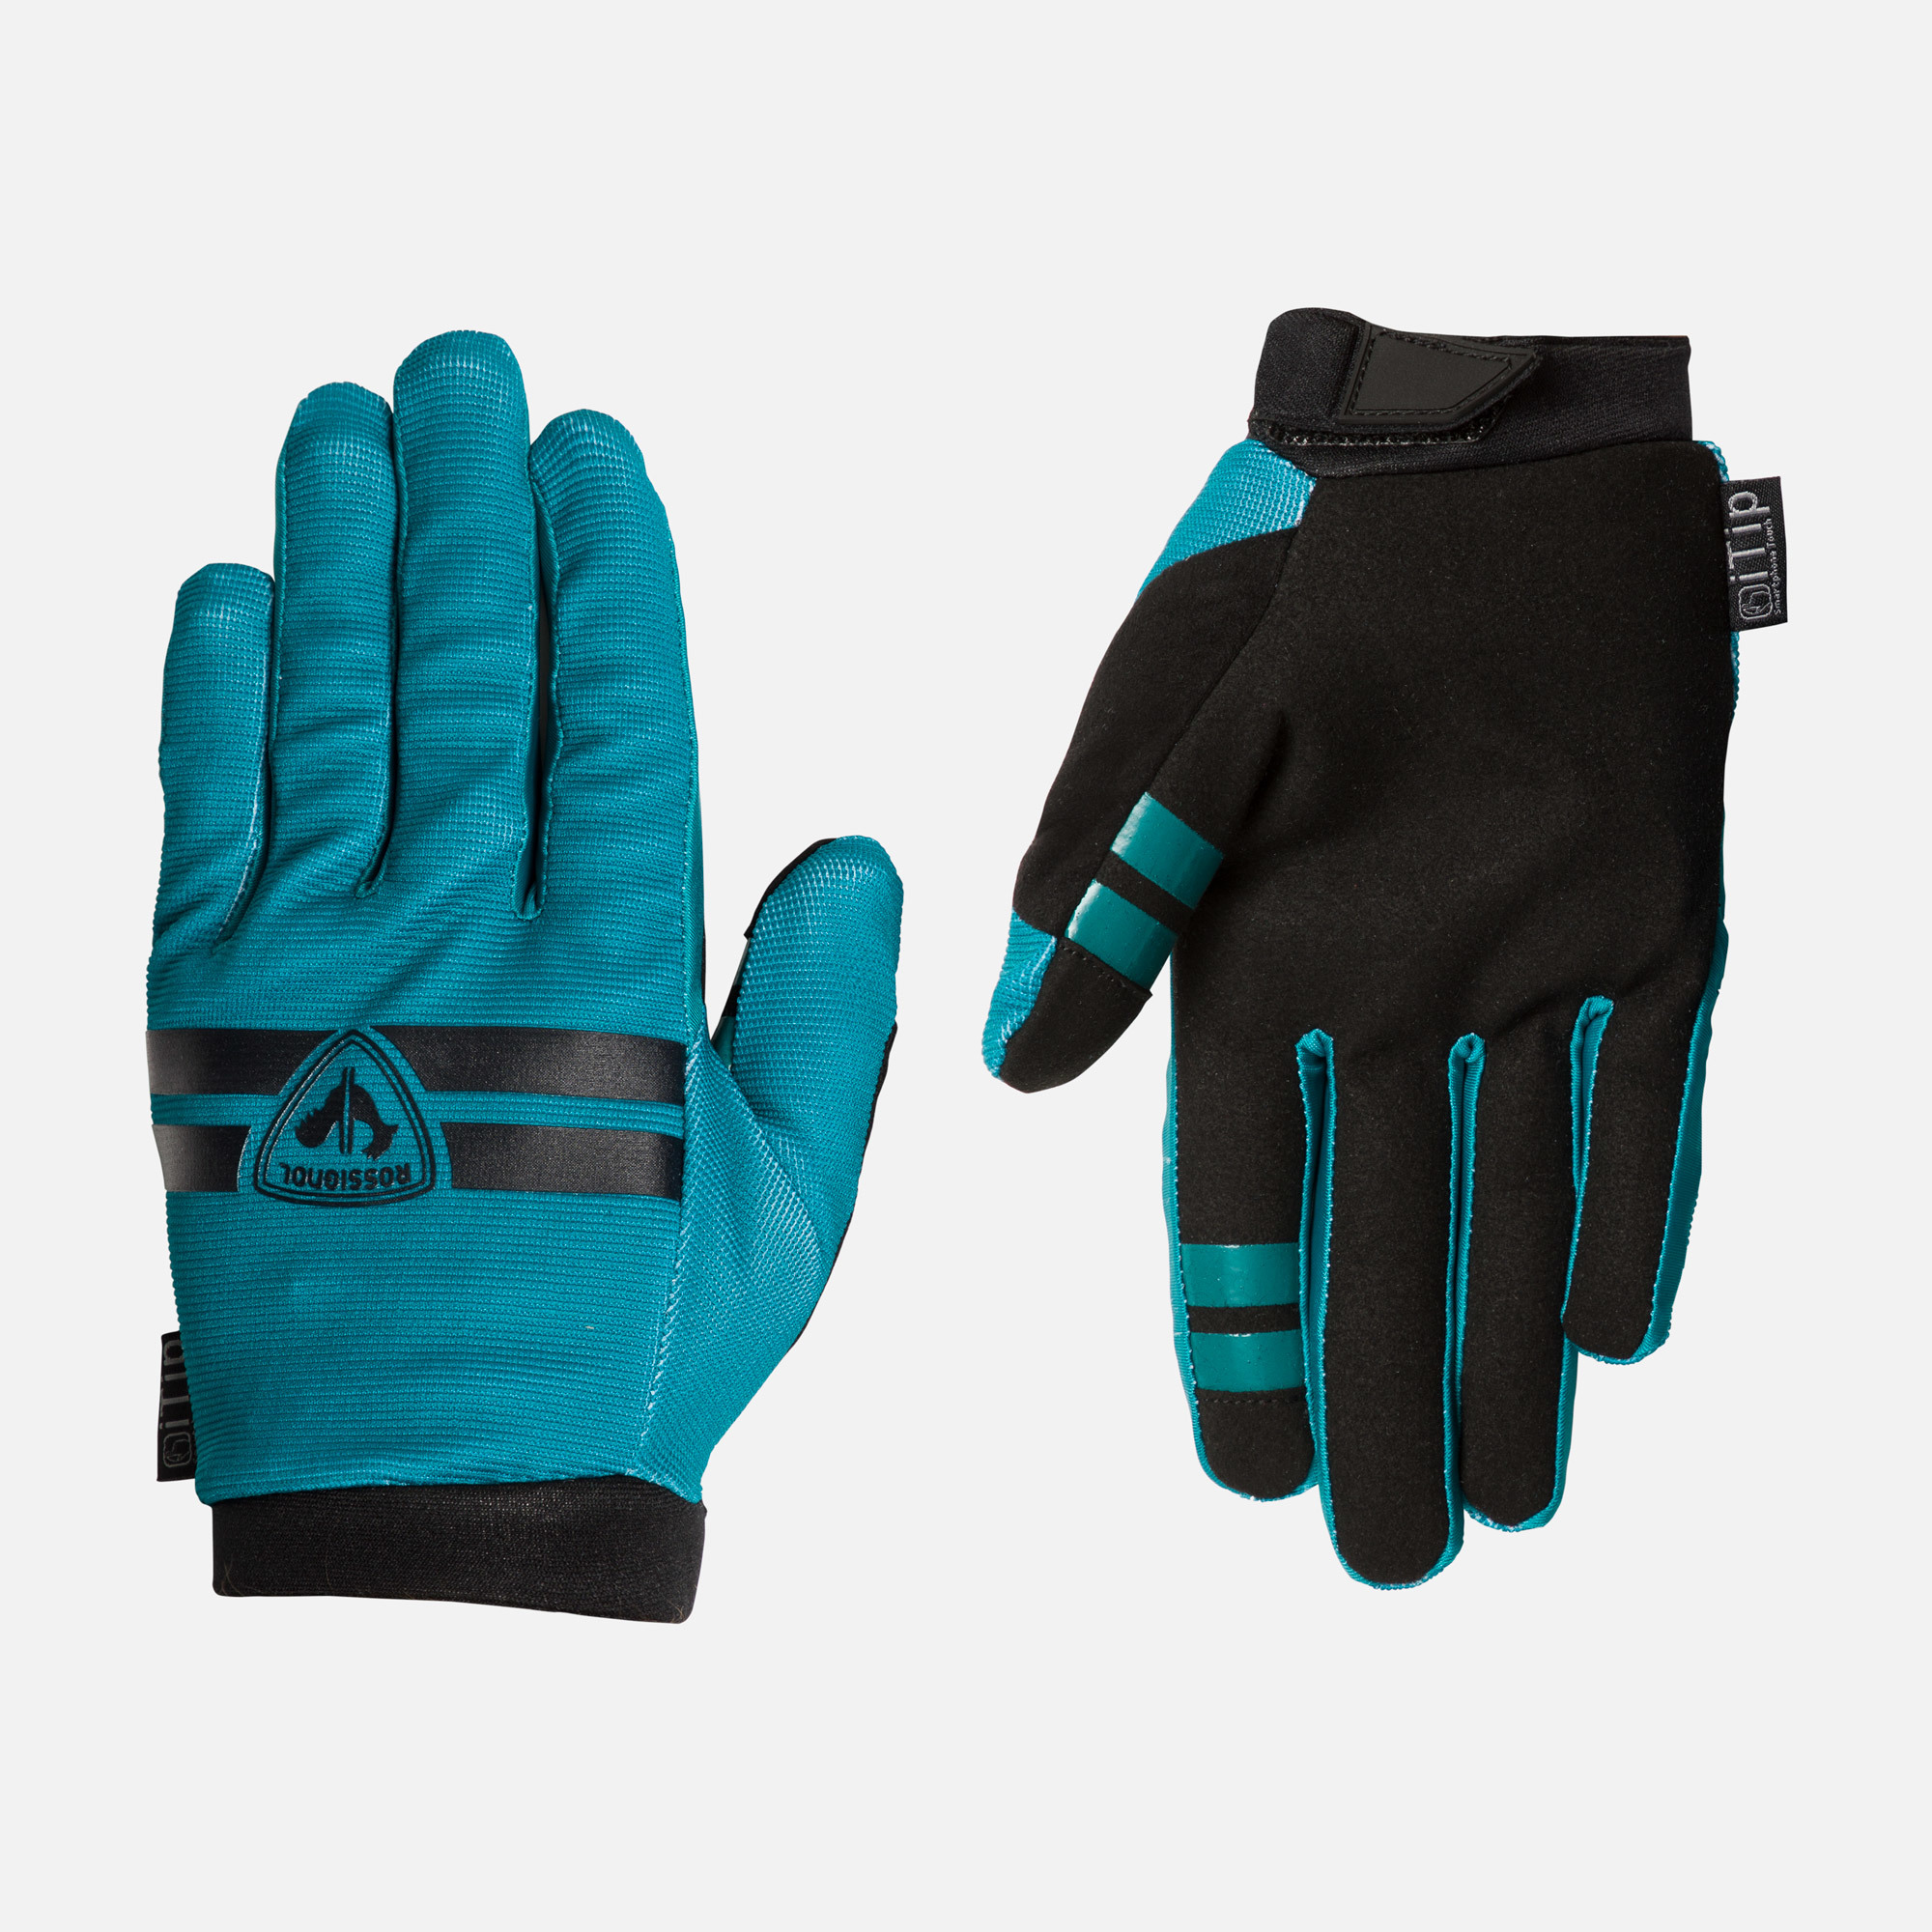 Men's full-finger mountain bike gloves